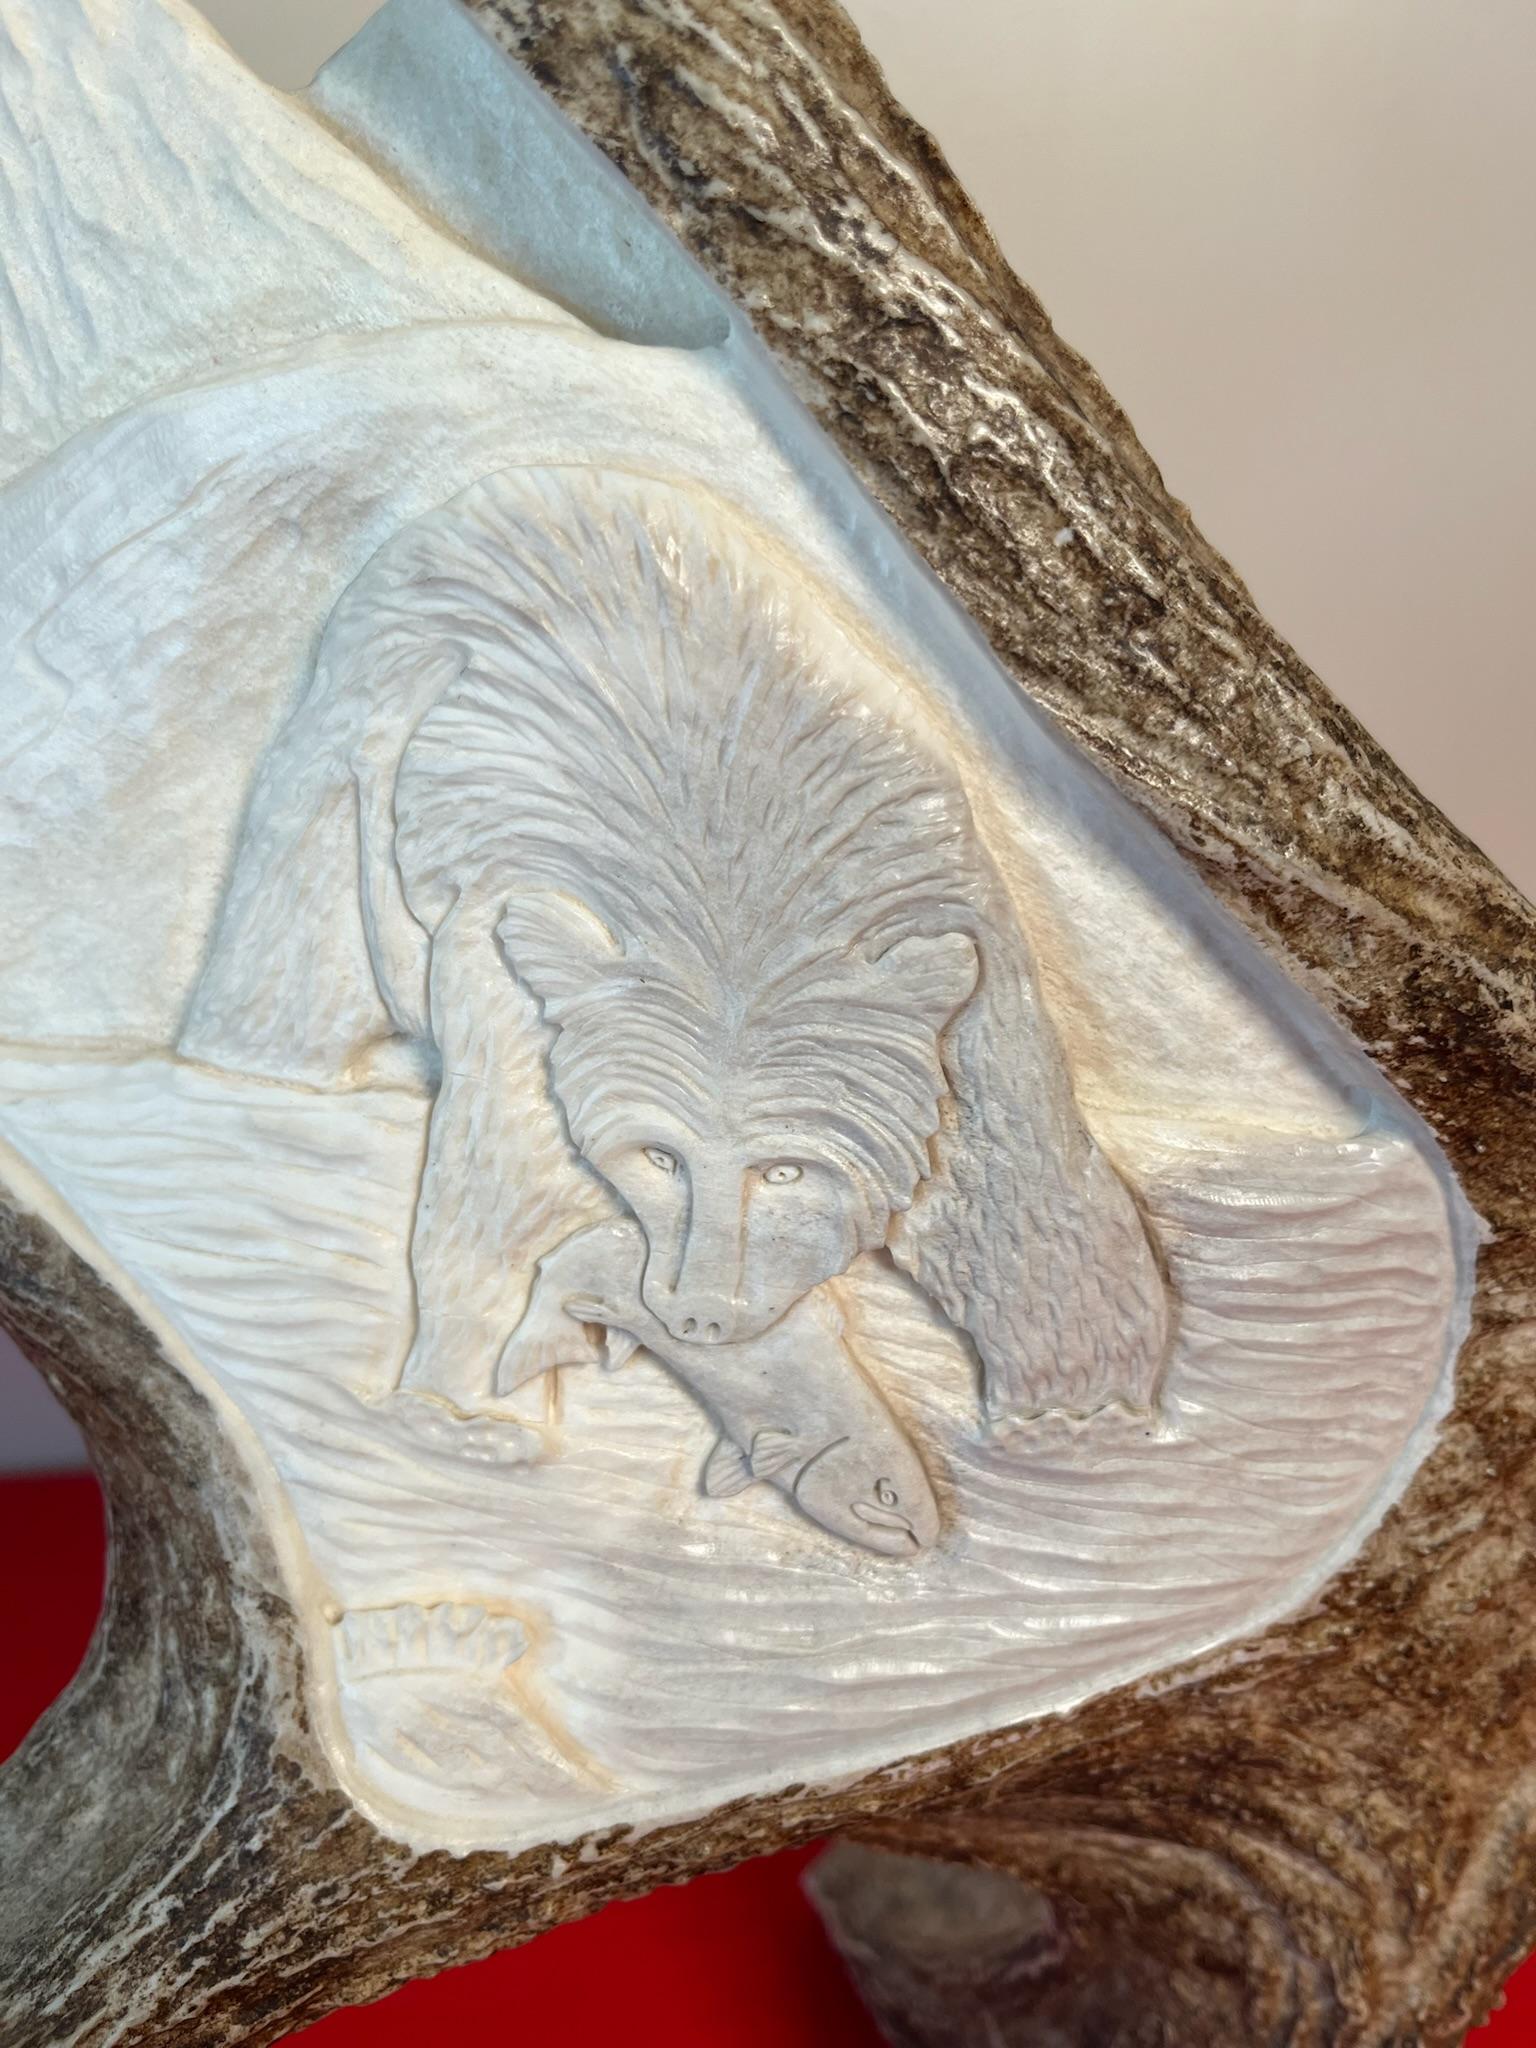 Moose Antler Master Carving By Tom Cooper "Eagles Landing"